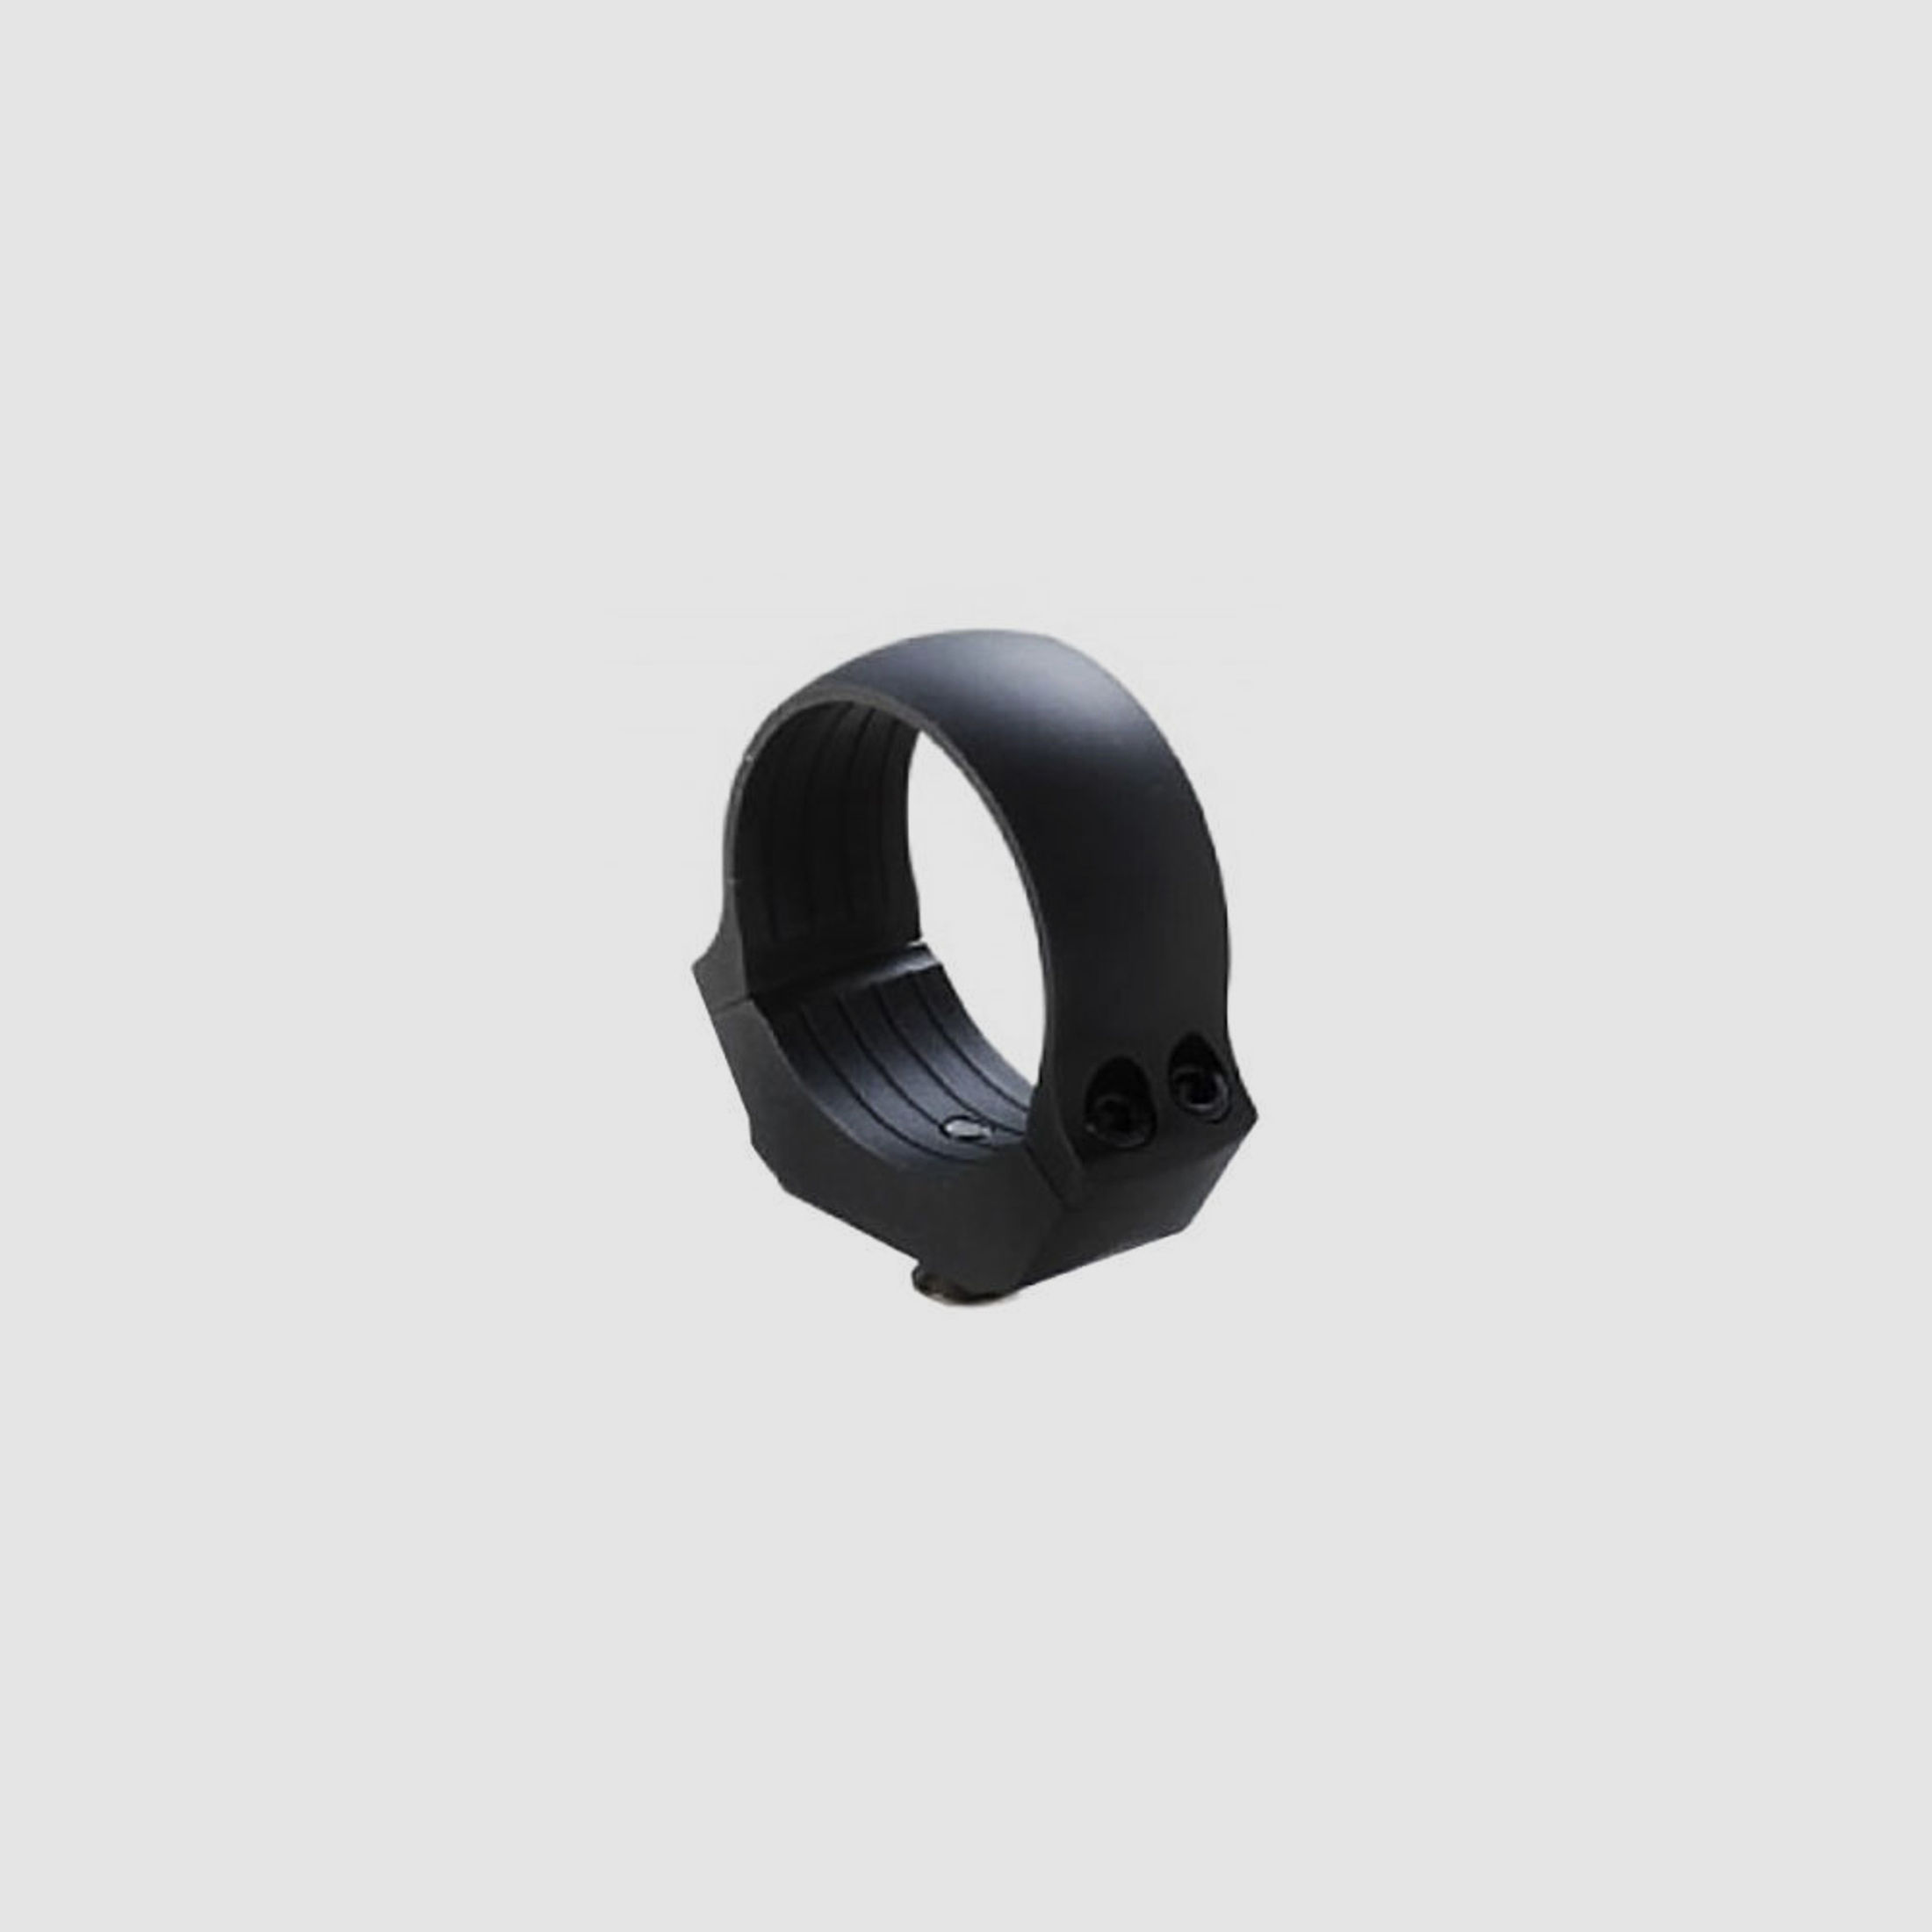 Dentler Dural Ring 34mm 3,5mm Höhe